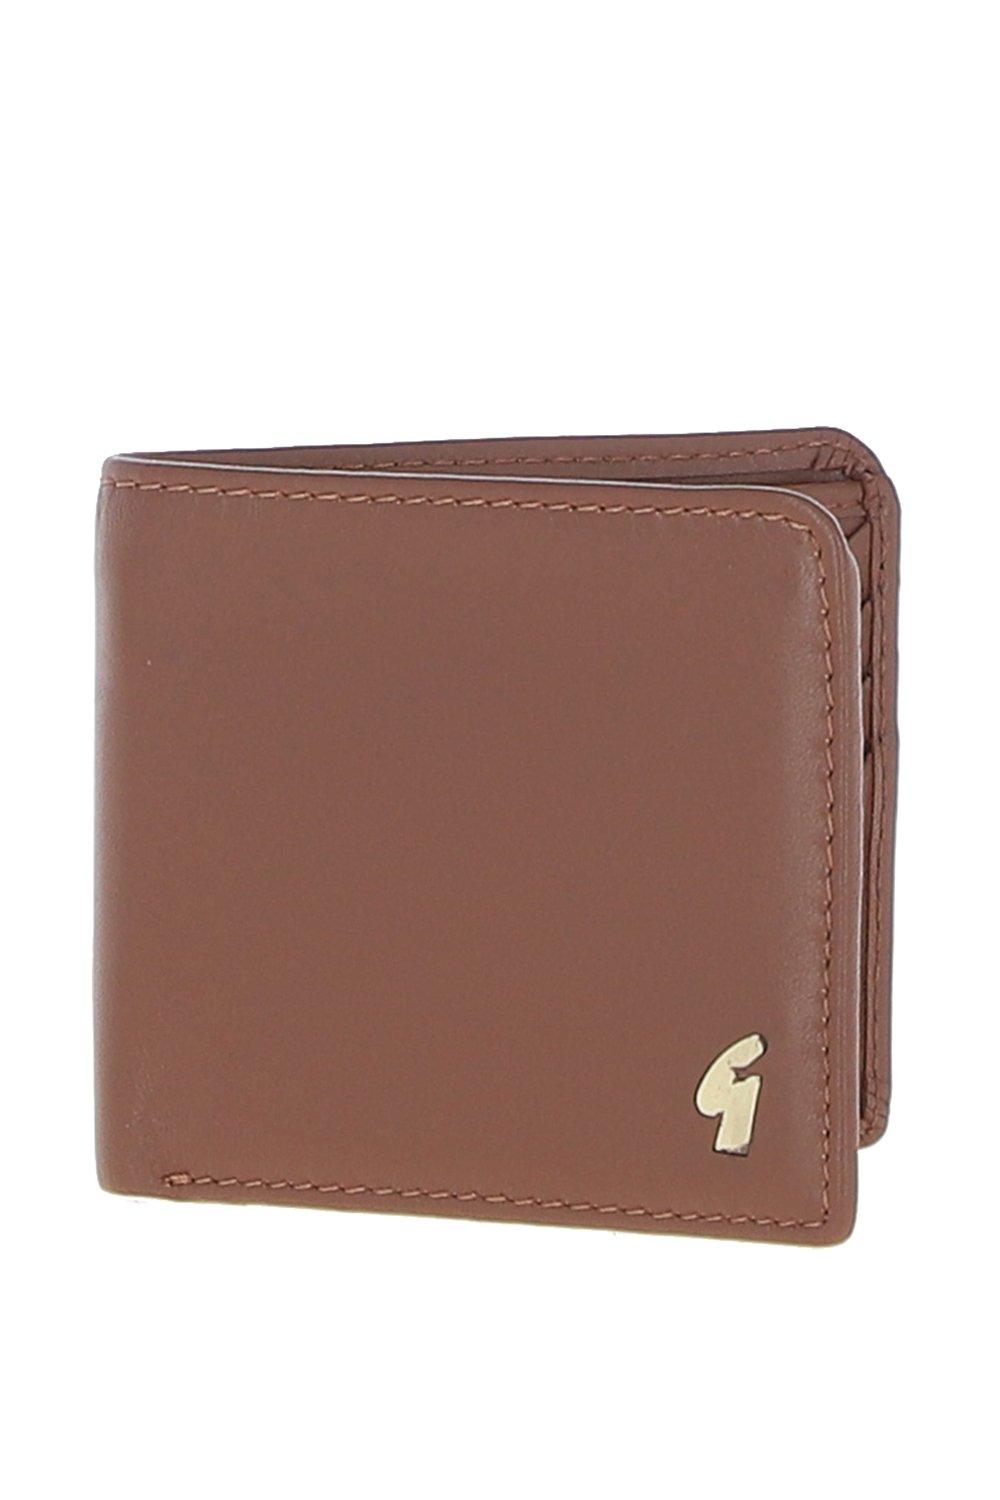 Классический кошелек '801' из натуральной кожи на 8 карточек GABICCI, коричневый модный горизонтальный мужской кошелек повседневный короткий кожаный деловой бумажник из воловьей кожи на молнии для водительских прав